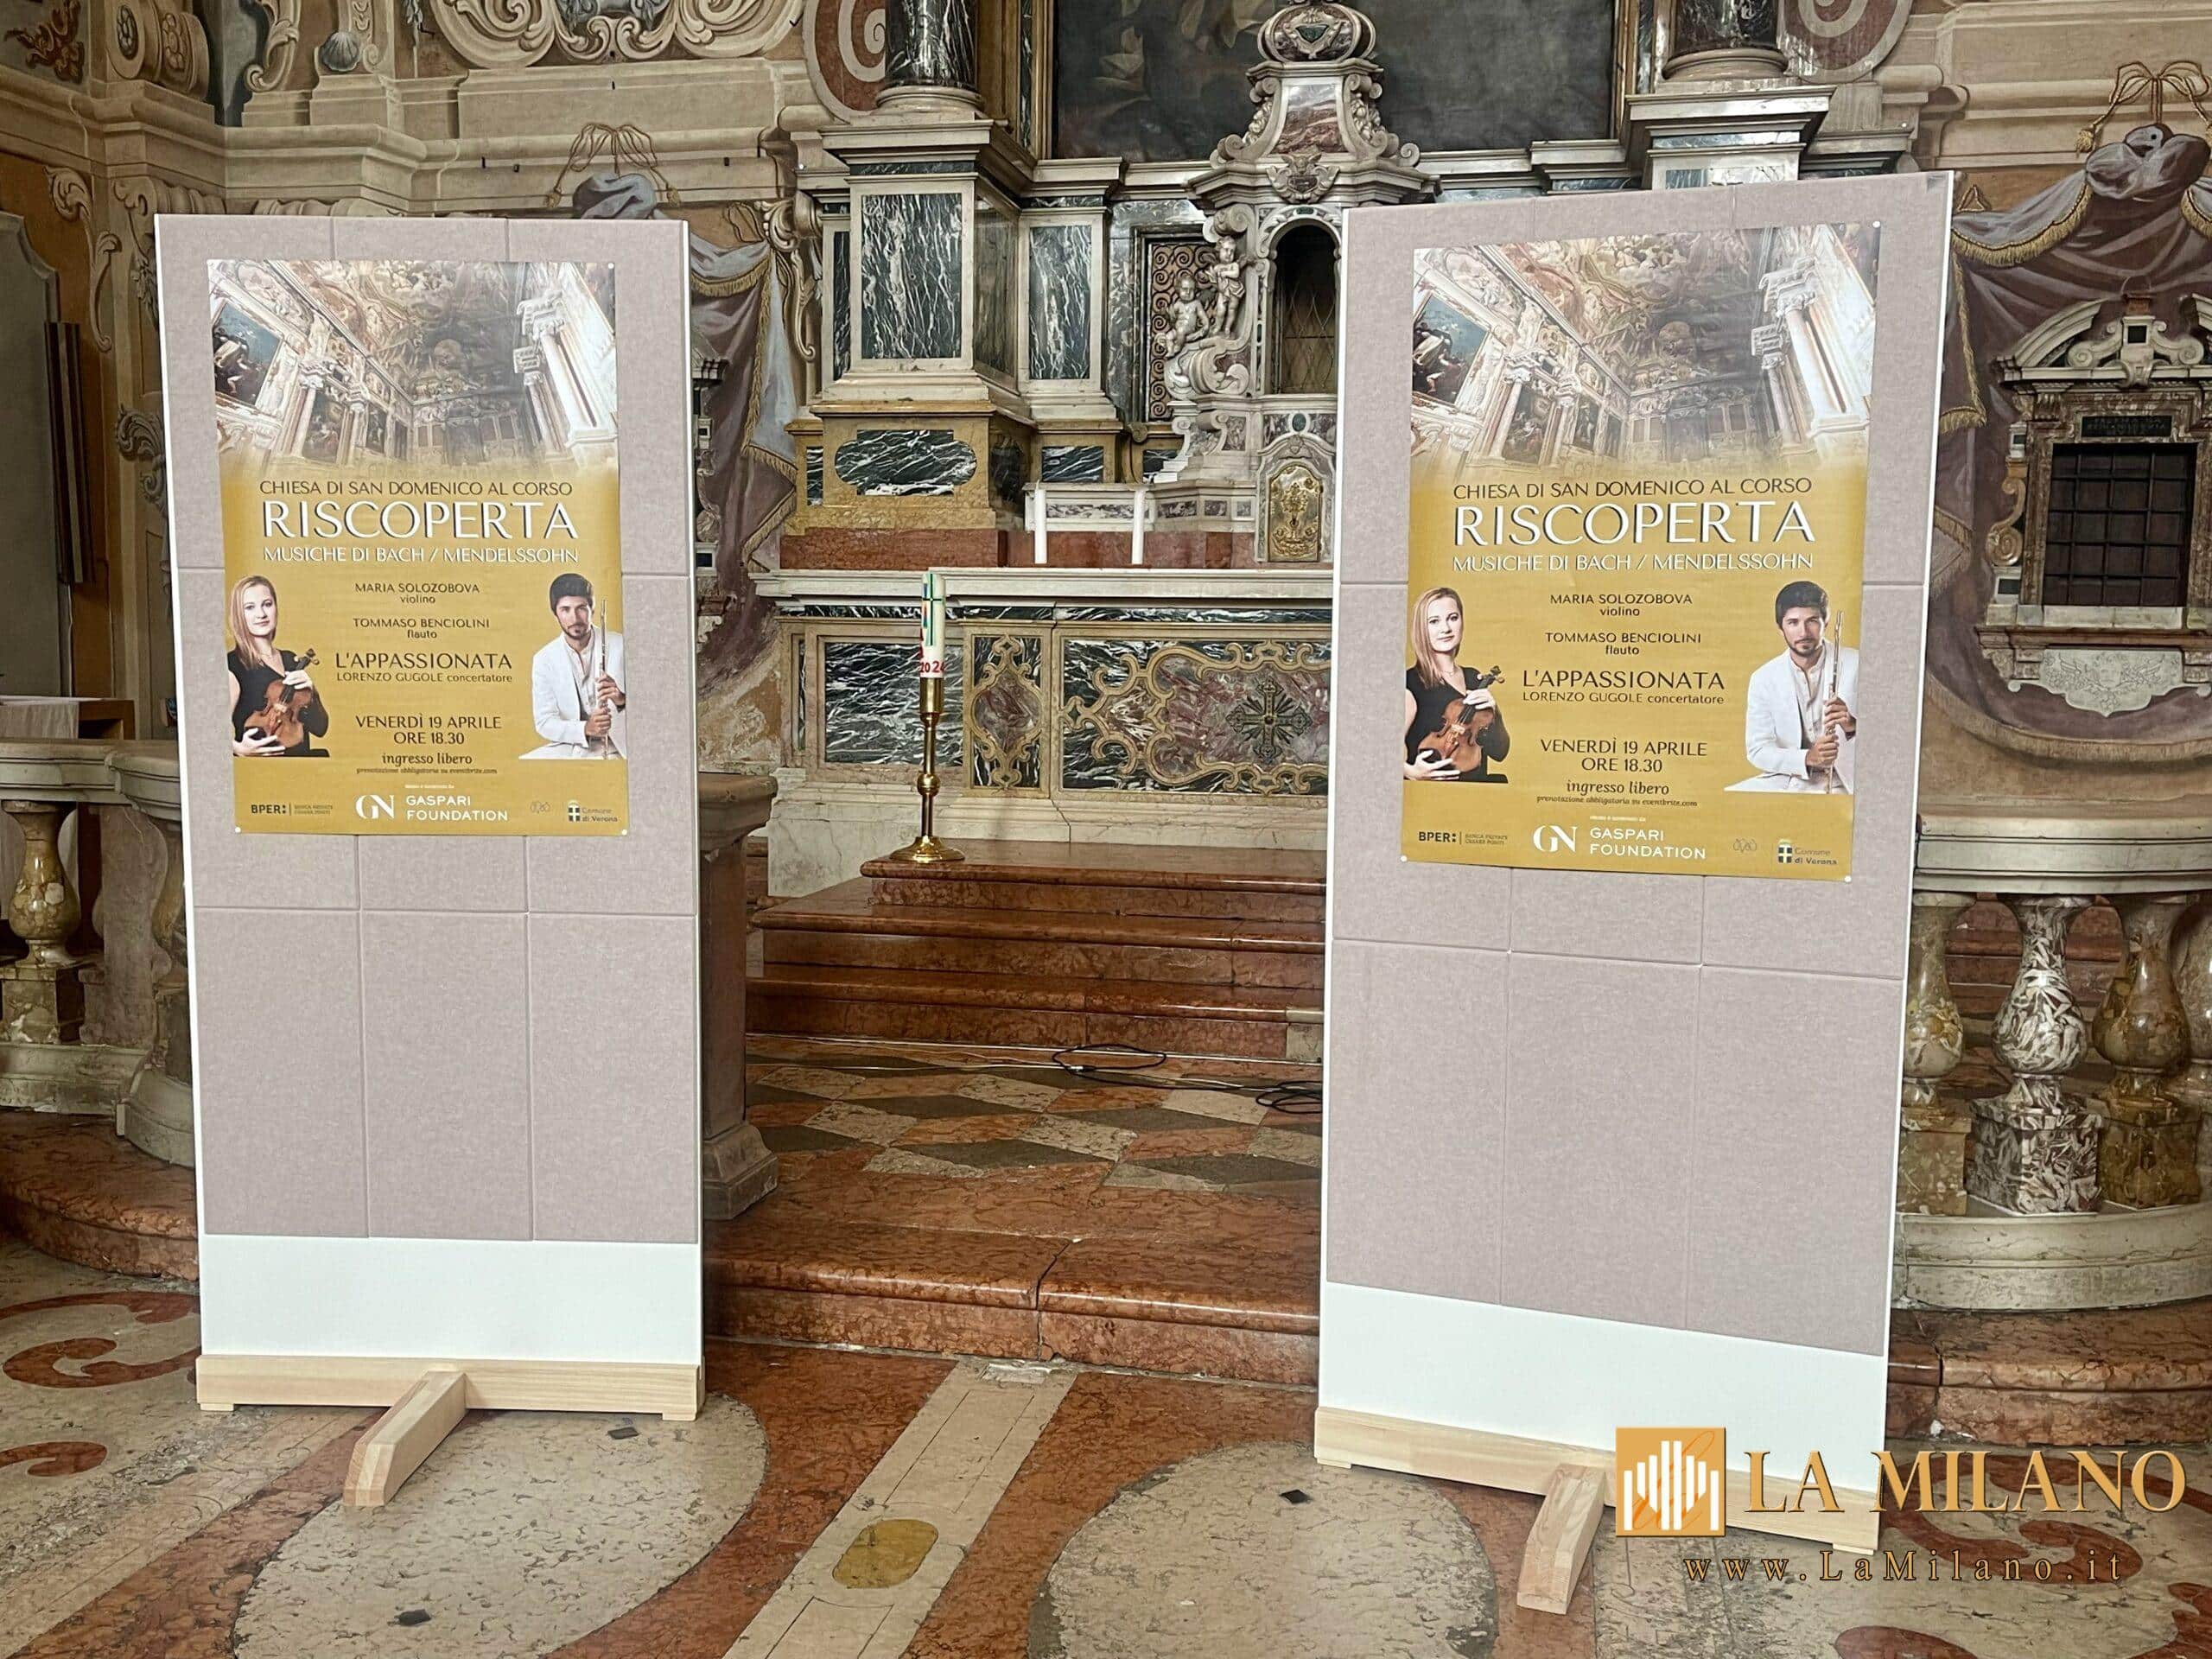 Verona: Chiesa di San Domenico al corso, al via nuovo progetto di valorizzazione culturale attraverso i patti di sussidiarietà